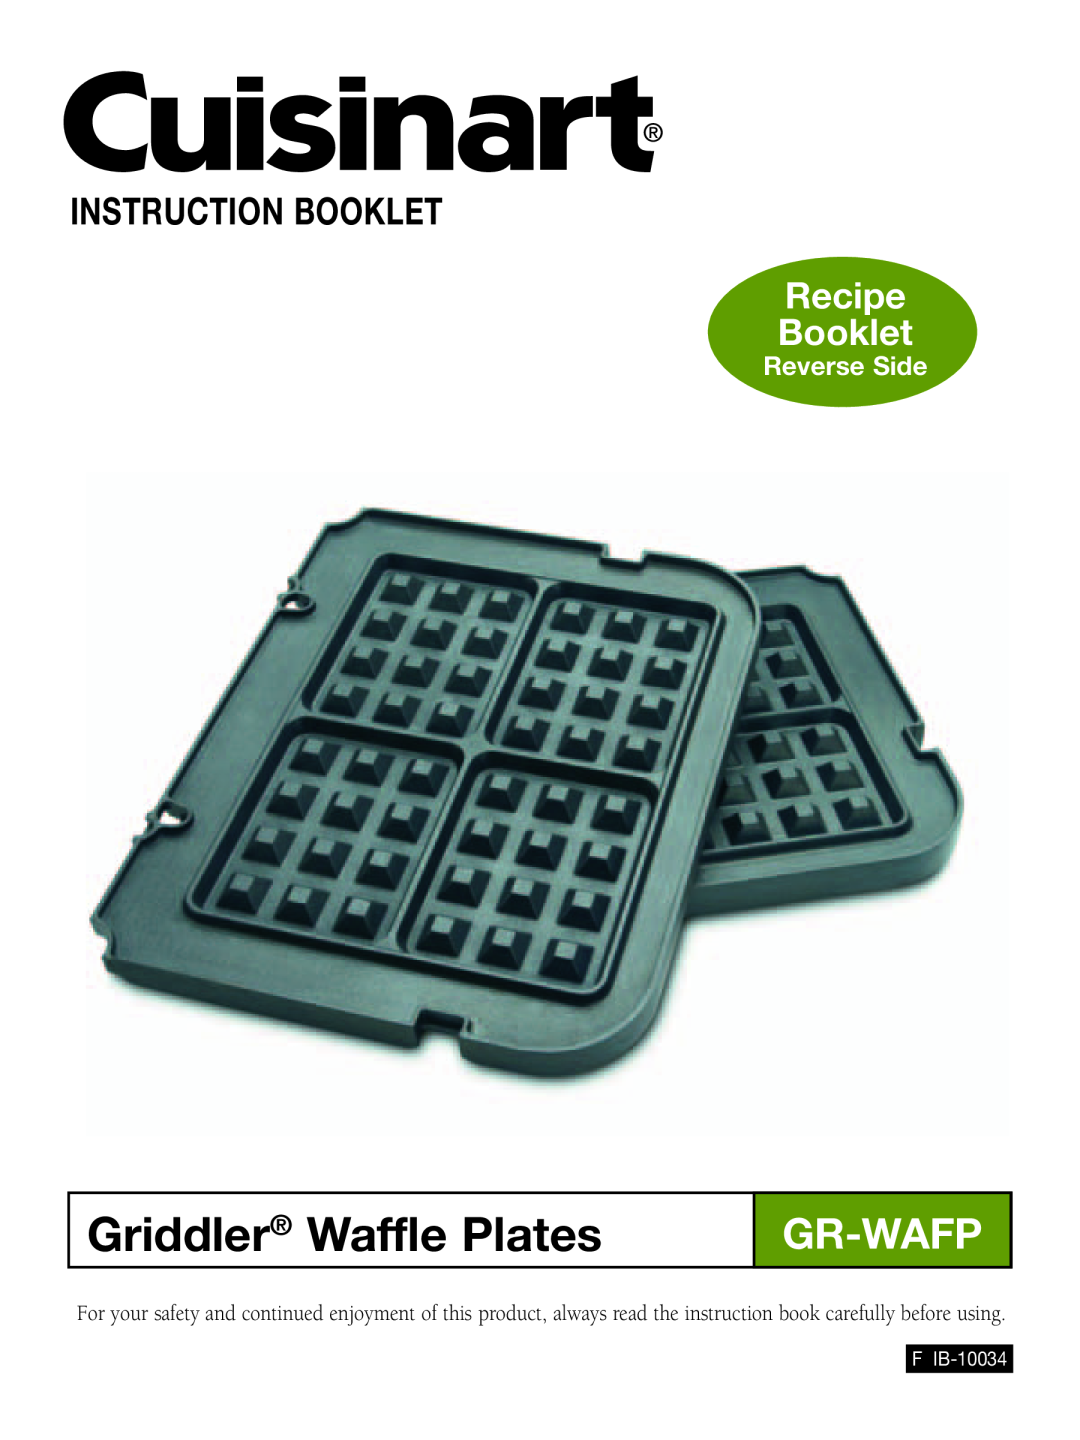 Cuisinart GR-WAFP manual Griddler Waffle Plates, Gr-Wafp, Recipe Booklet, Reverse Side, Instruction Booklet, F IB-10034 